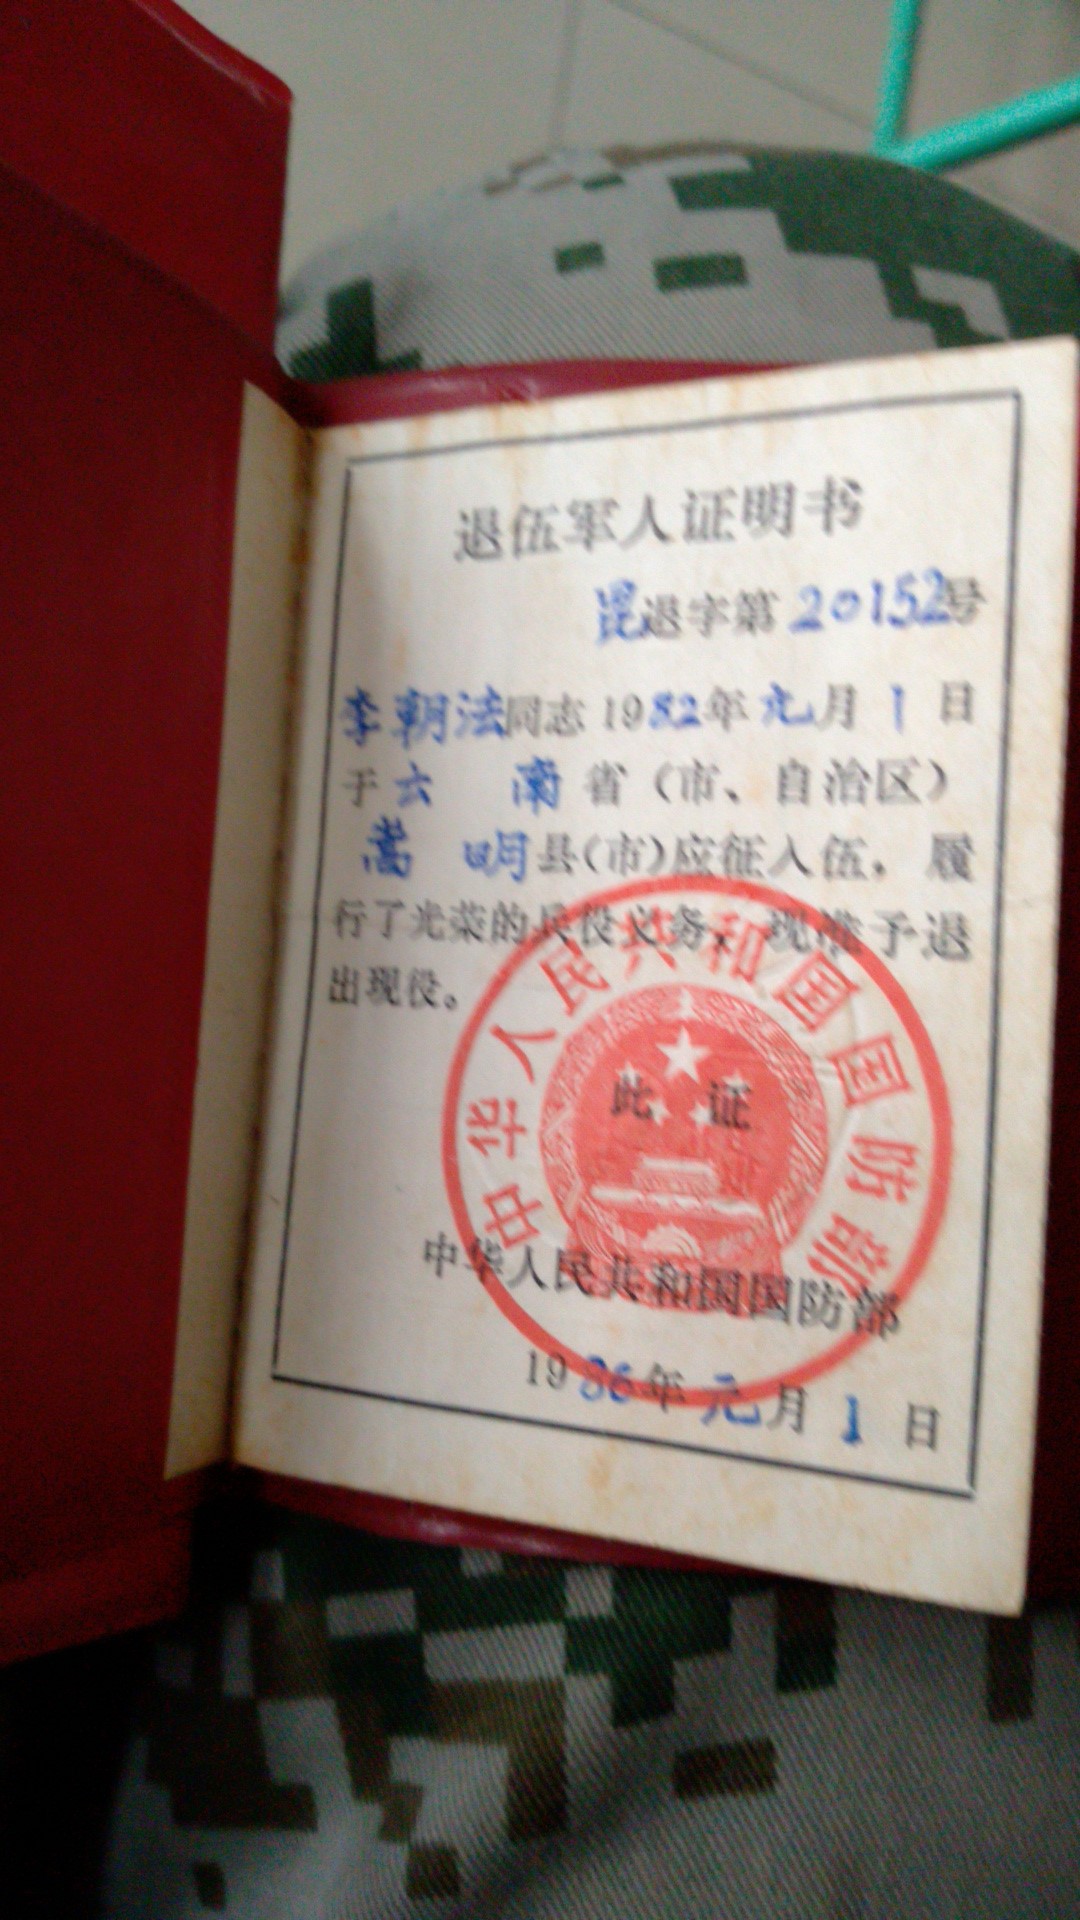 中国红色文化研究会老山精神专业委员会